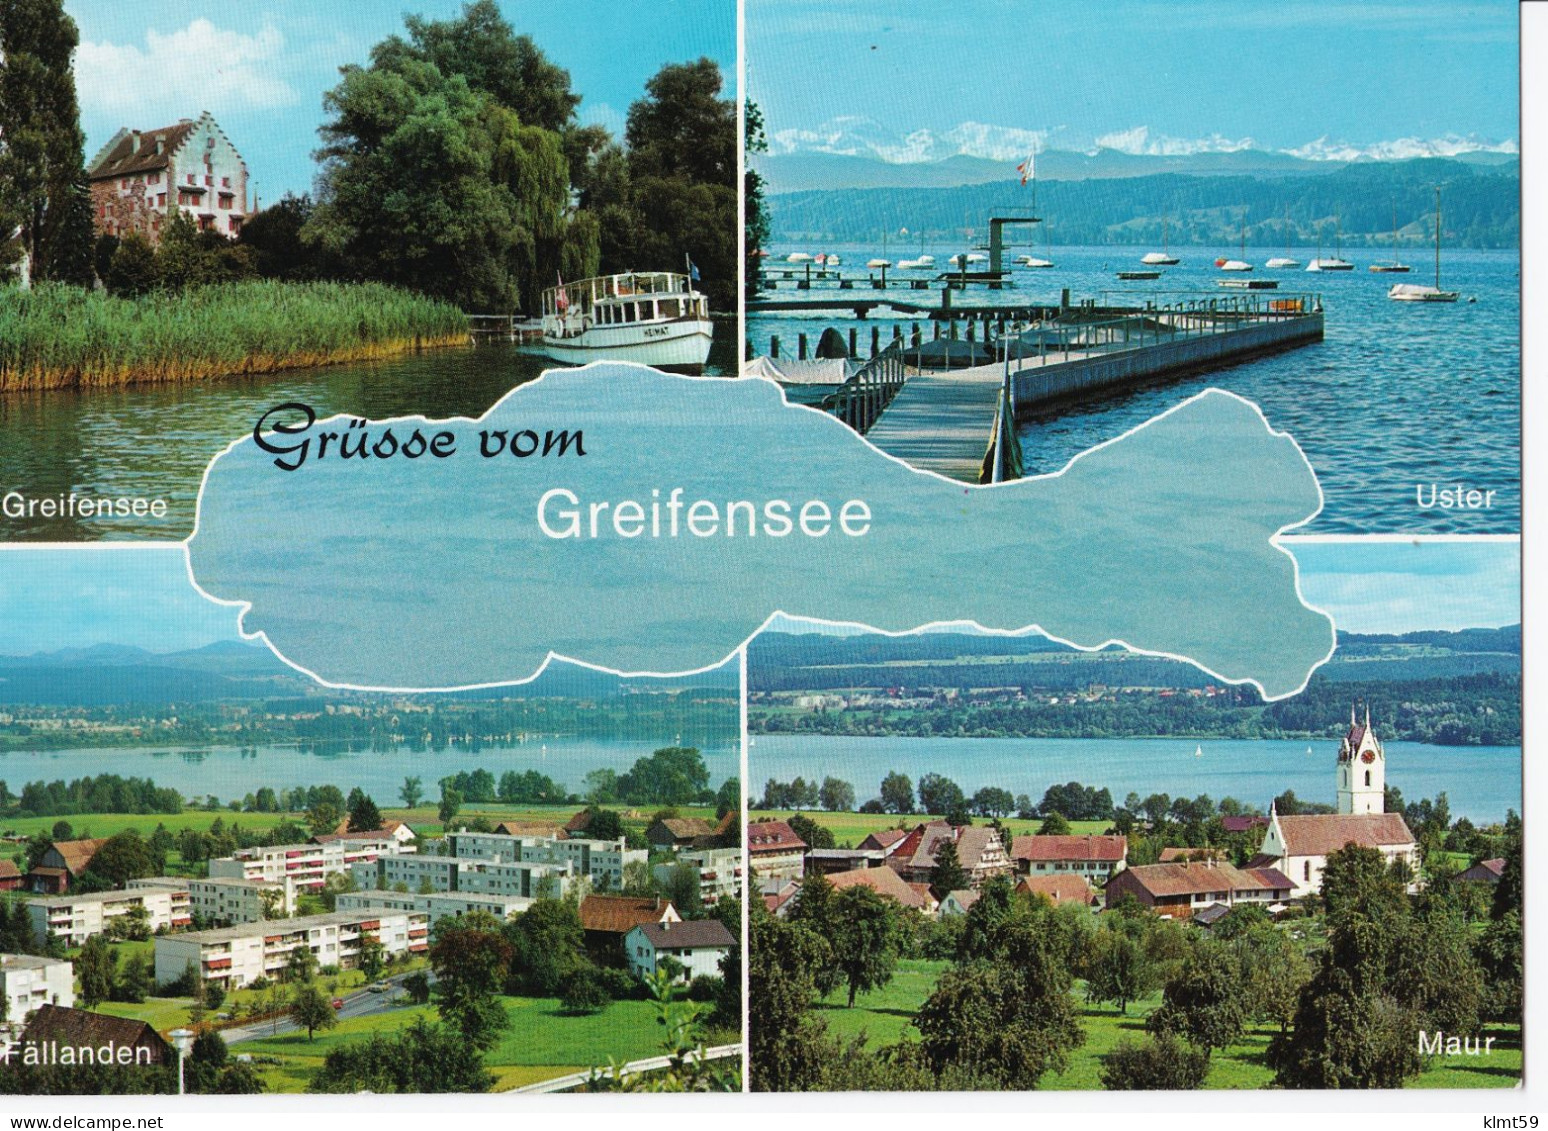 Grüsse Vom Greifensee - Greifensee